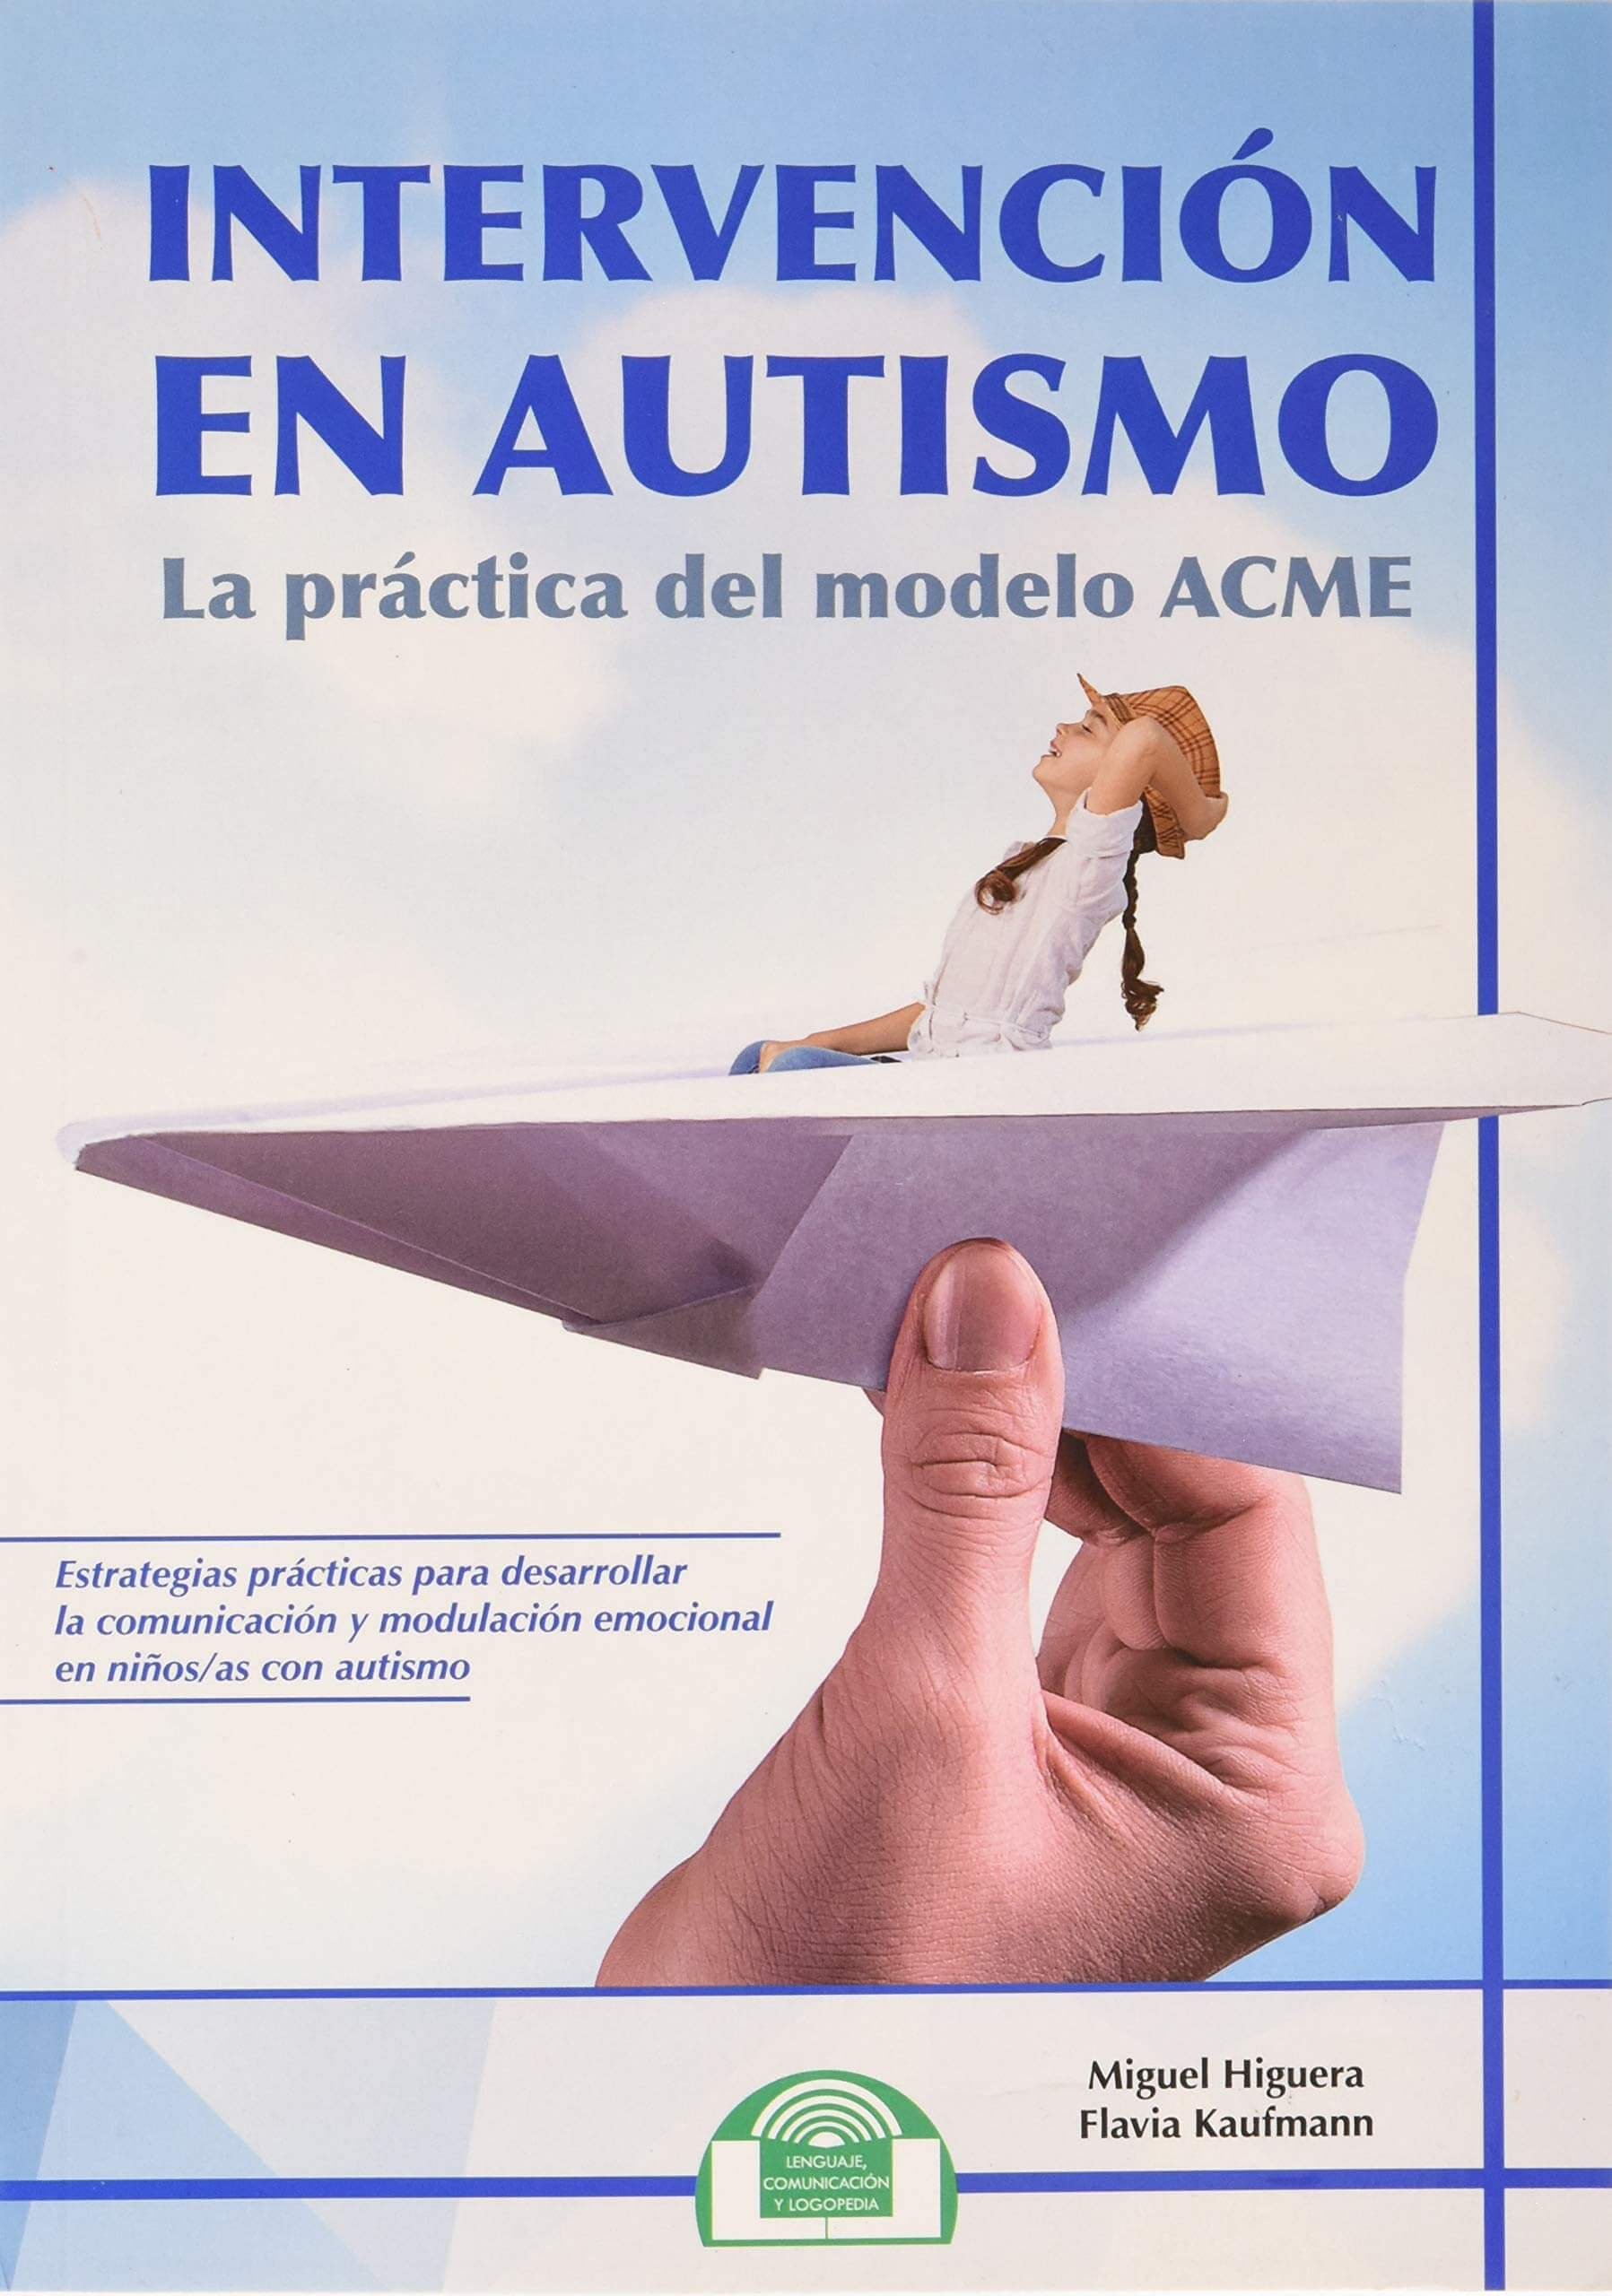 Libro en autismo la practica del modelo ACME